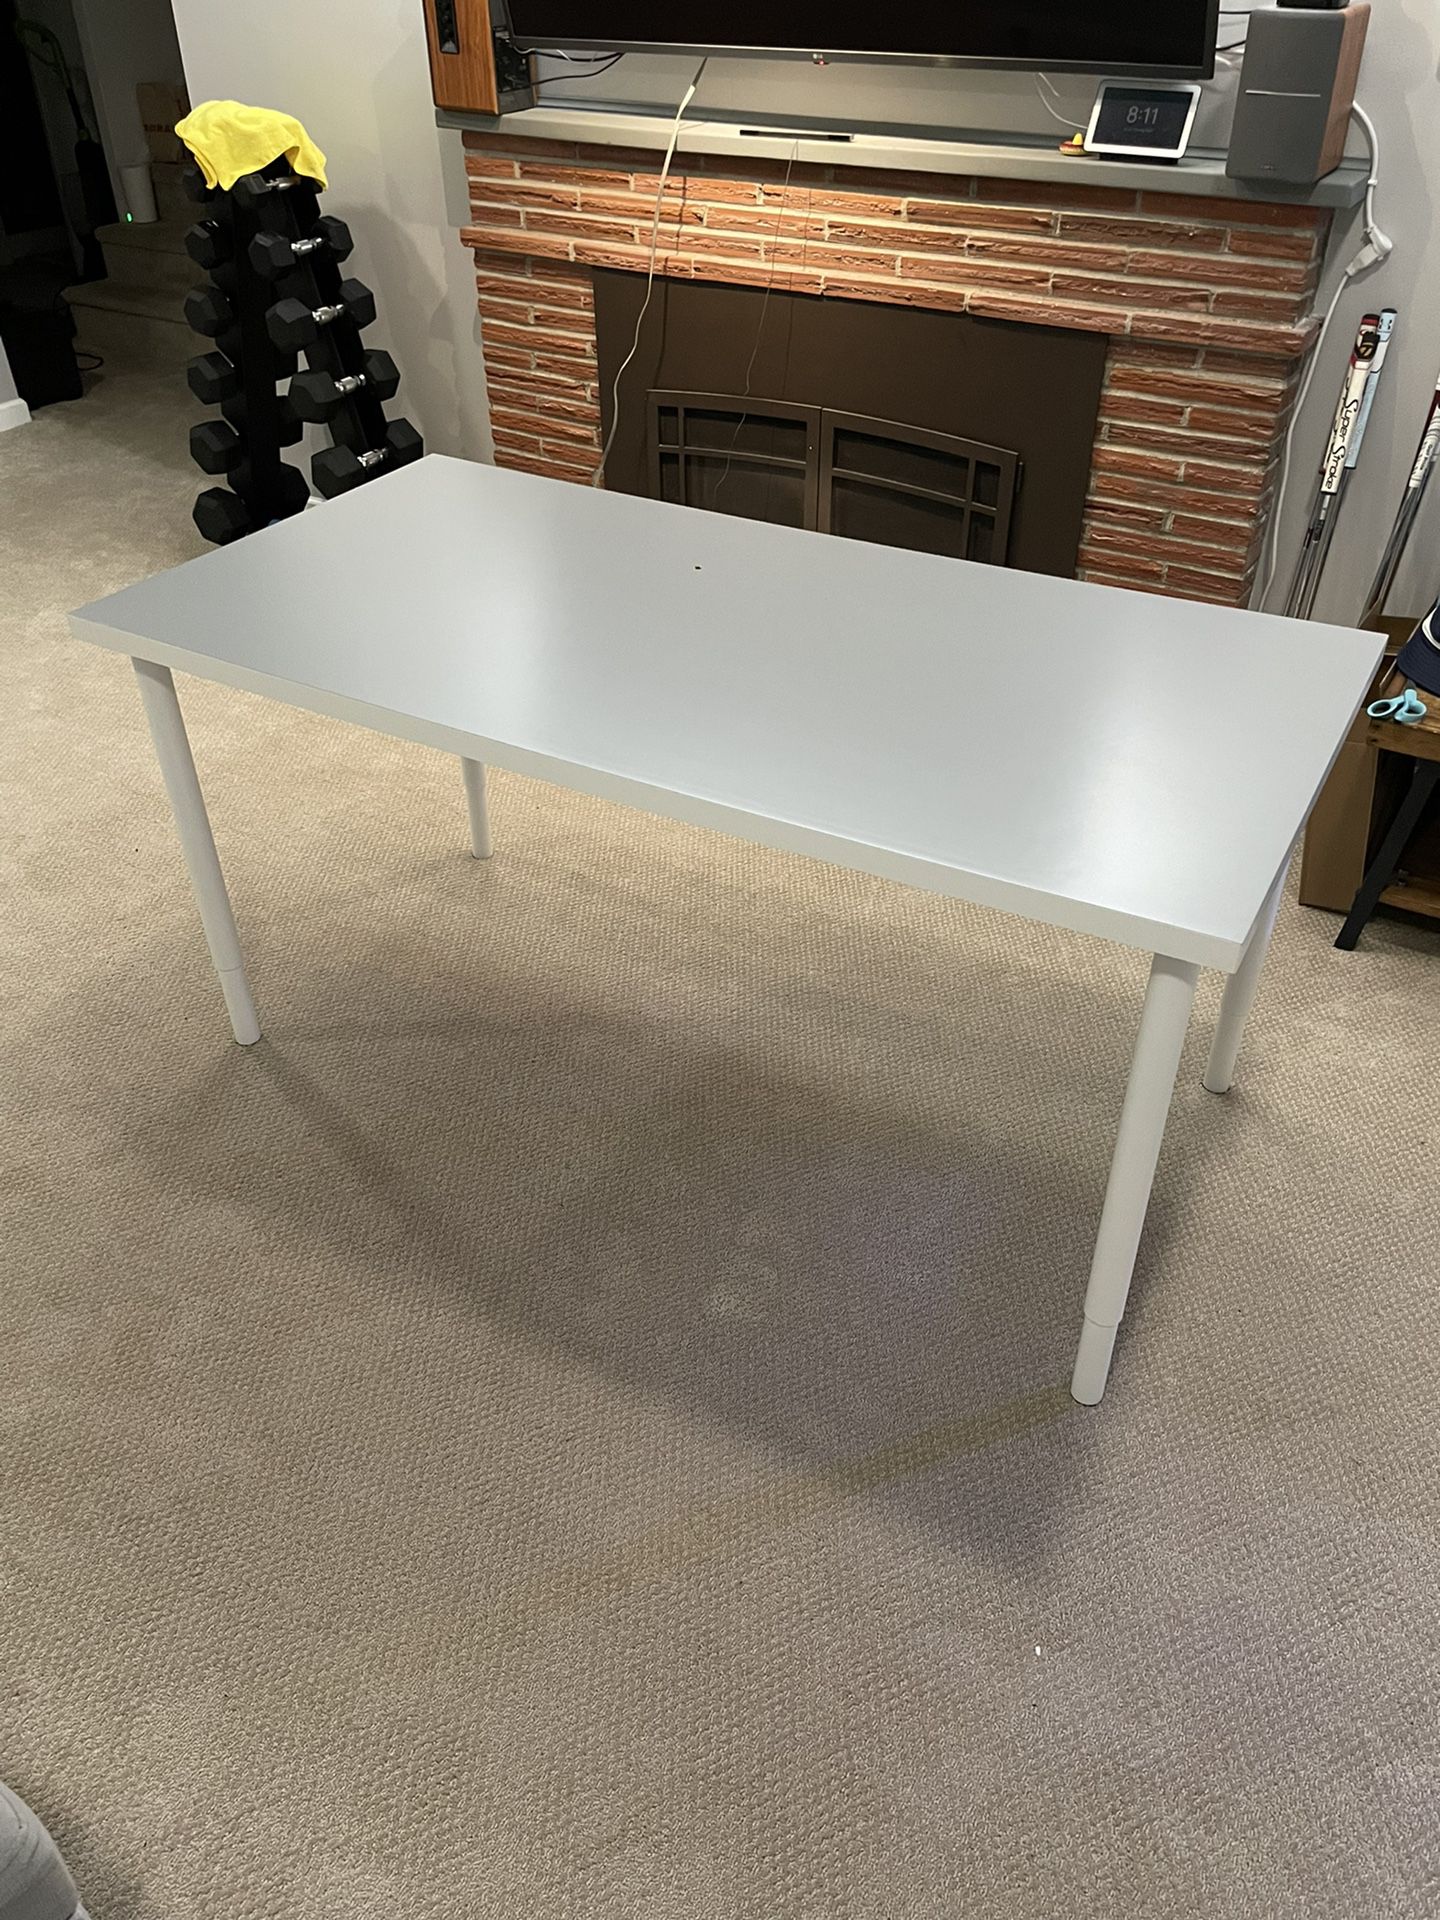 IKEA Desk  55”x31”